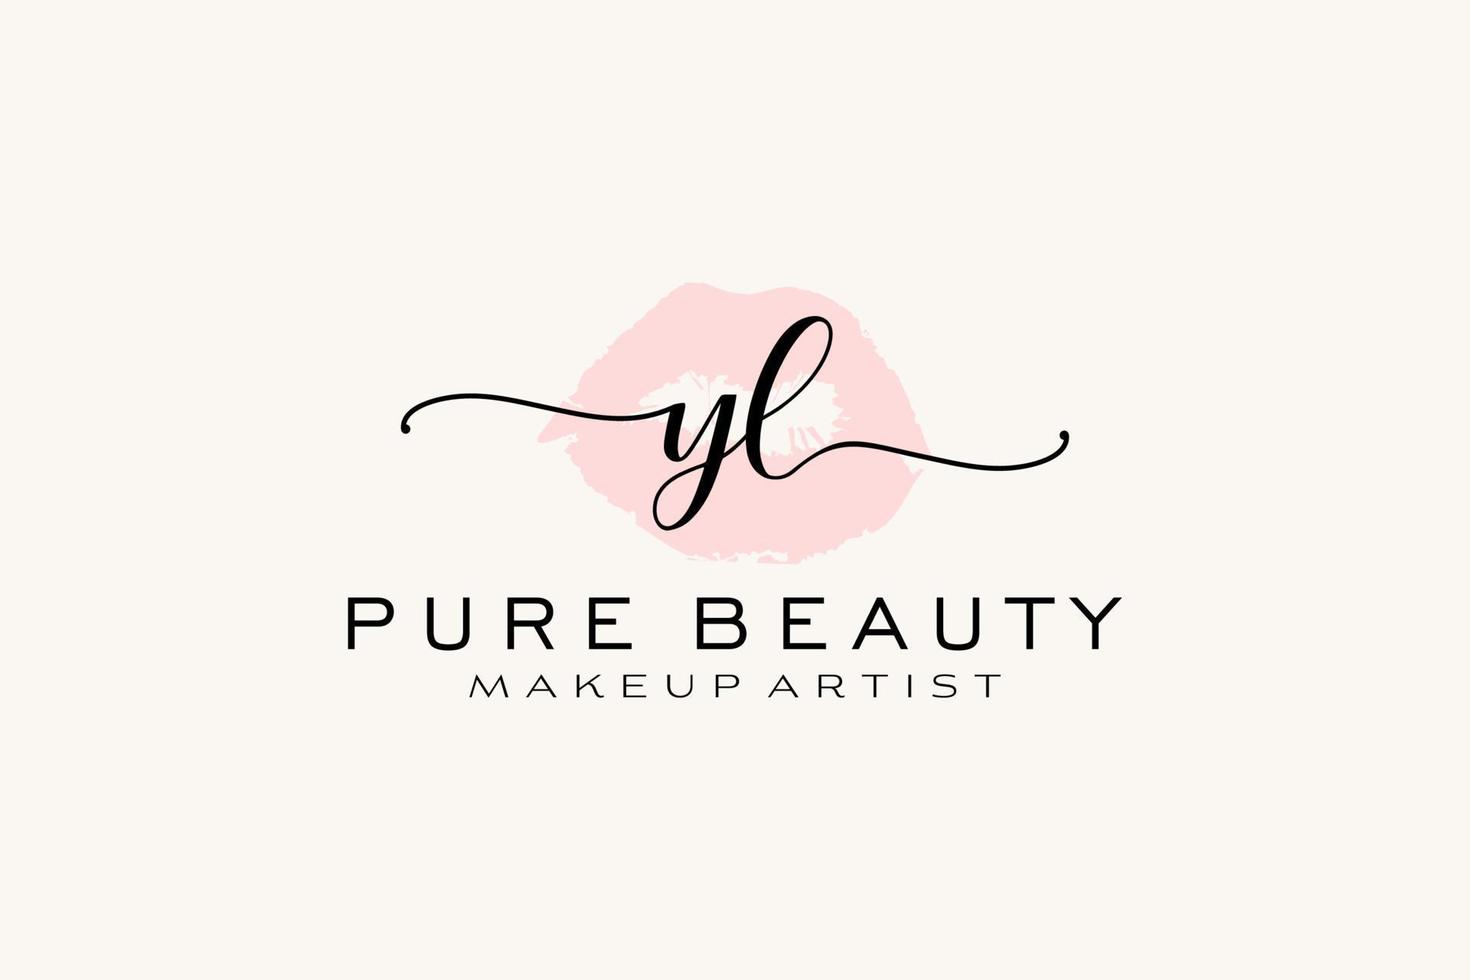 création initiale de logo préfabriqué pour les lèvres aquarelles yl, logo pour la marque d'entreprise de maquilleur, création de logo de boutique de beauté blush, logo de calligraphie avec modèle créatif. vecteur